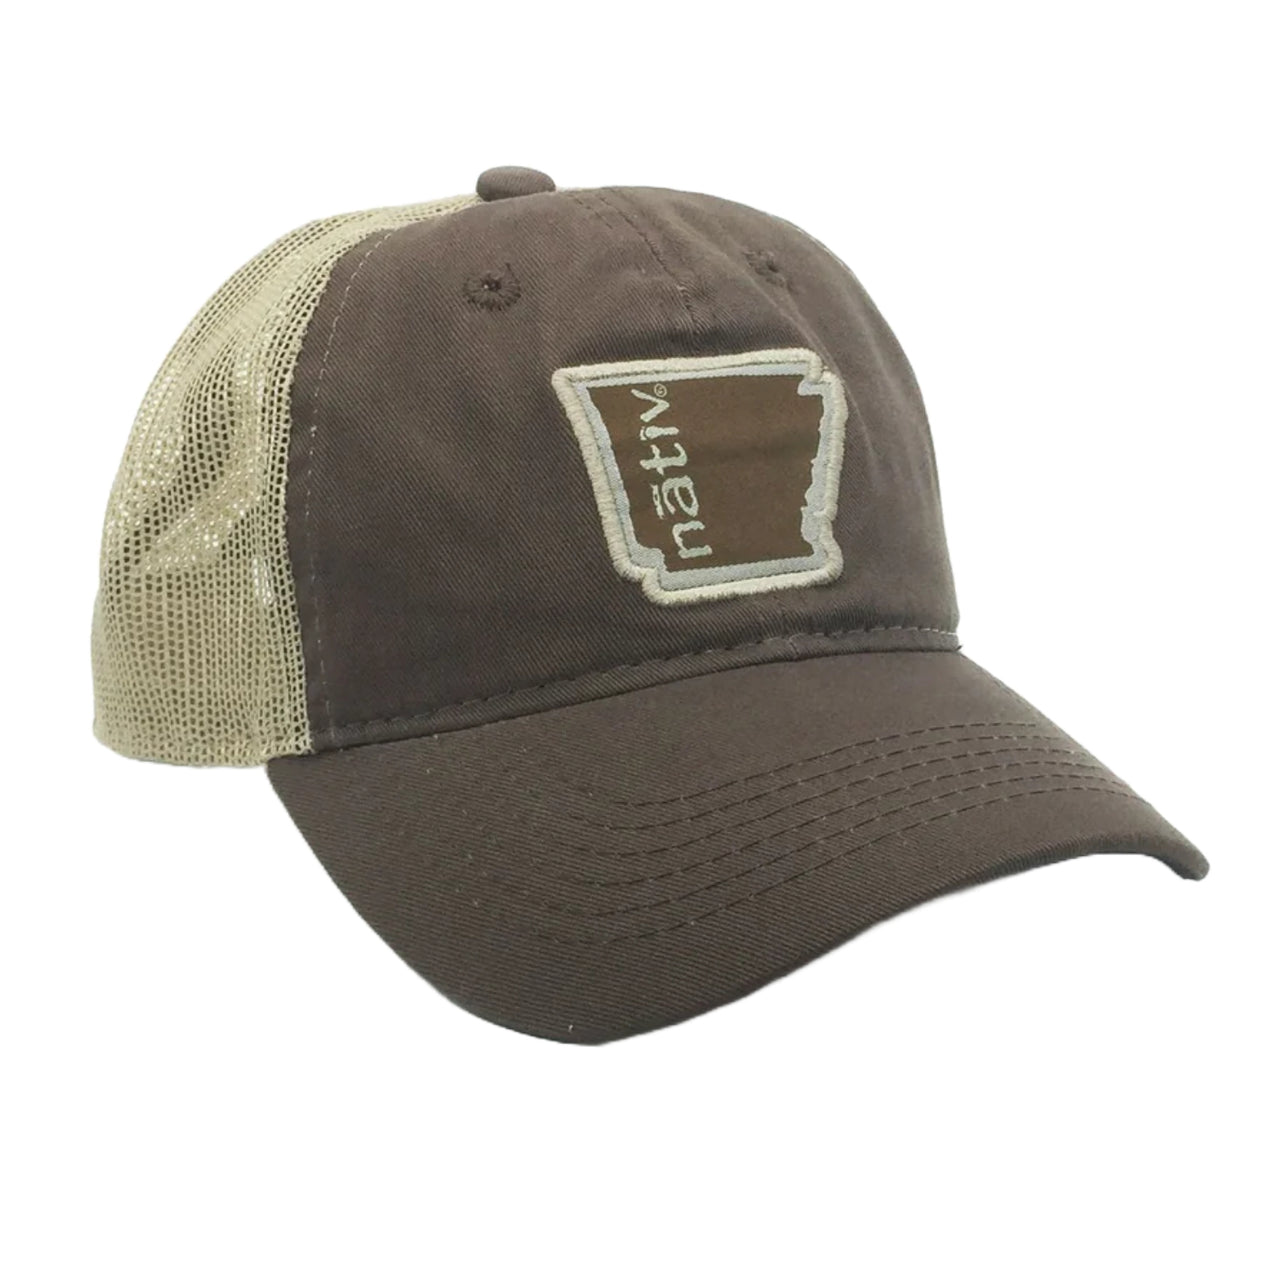 AR State Trucker Hat | Brown